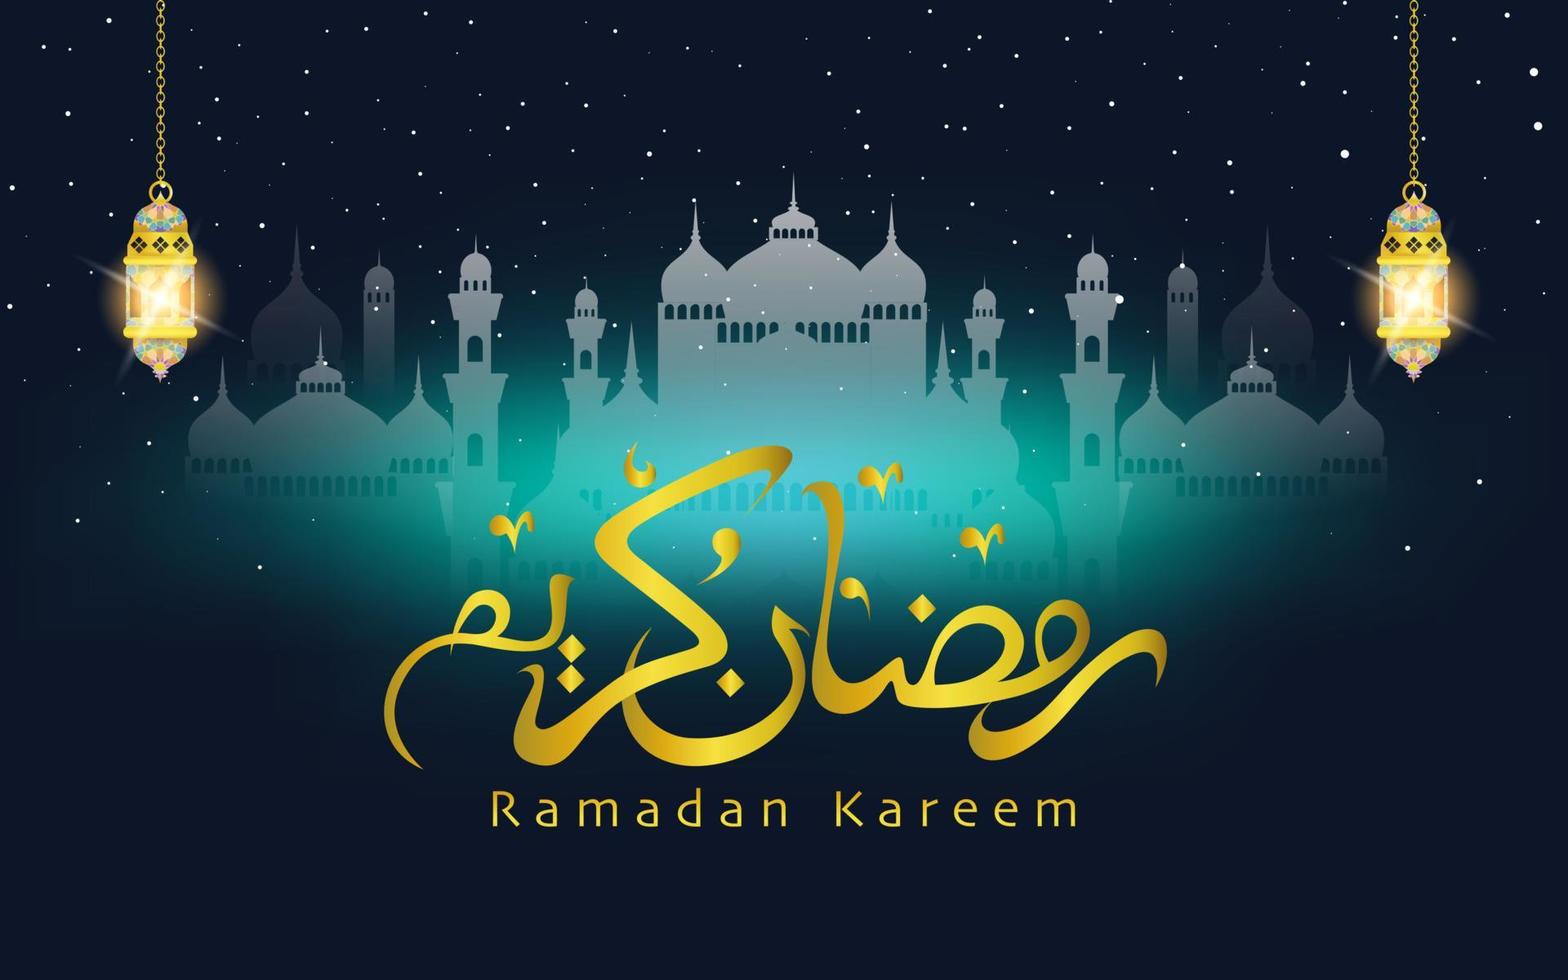 Ramadan Kareem. islamisches design mit handgezeichneten kalligraphien, laterne und moschee vektor